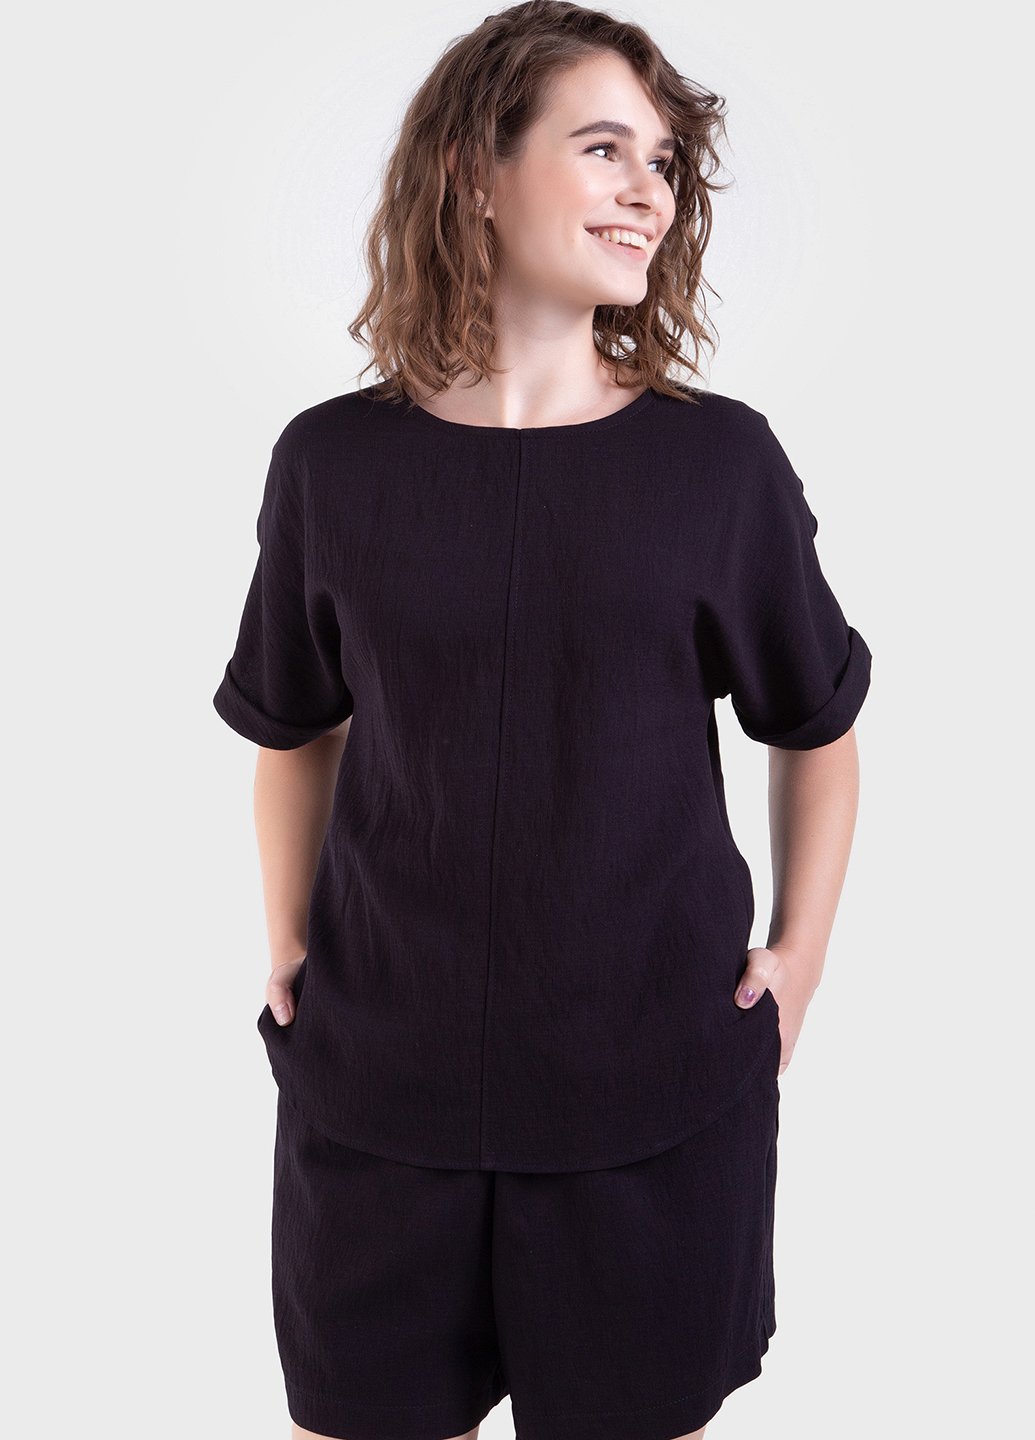 Купить Оверсайз футболка женская черного цвета из льна-жатки Merlini Салерно 800000043, размер 42-44 в интернет-магазине